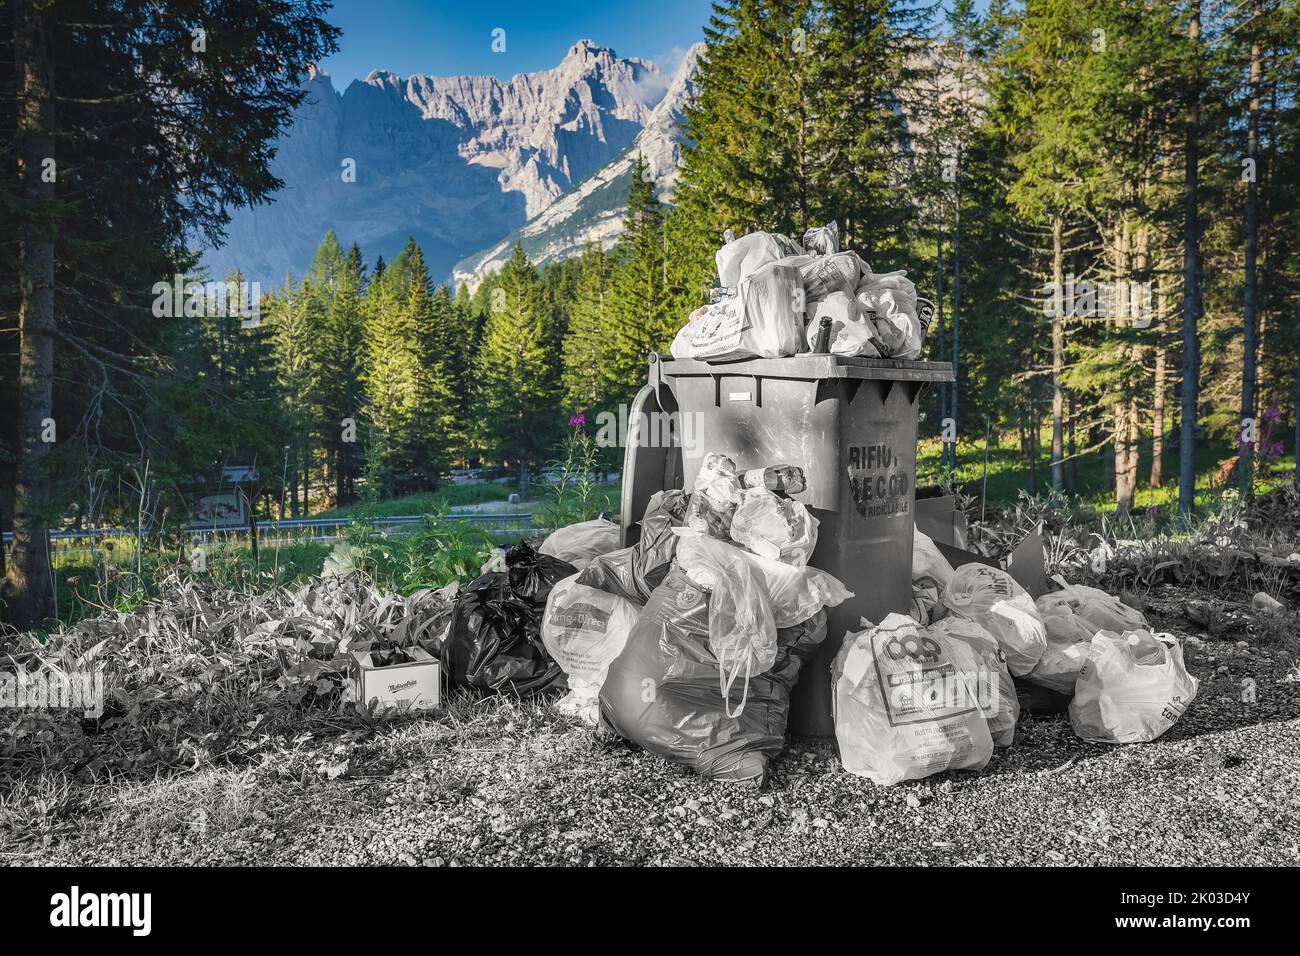 Déchets abandonnés le long d'une route de montagne dans les Dolomites, tourisme de masse, tourisme non durable, Dolomites, Vénétie, Italie Banque D'Images